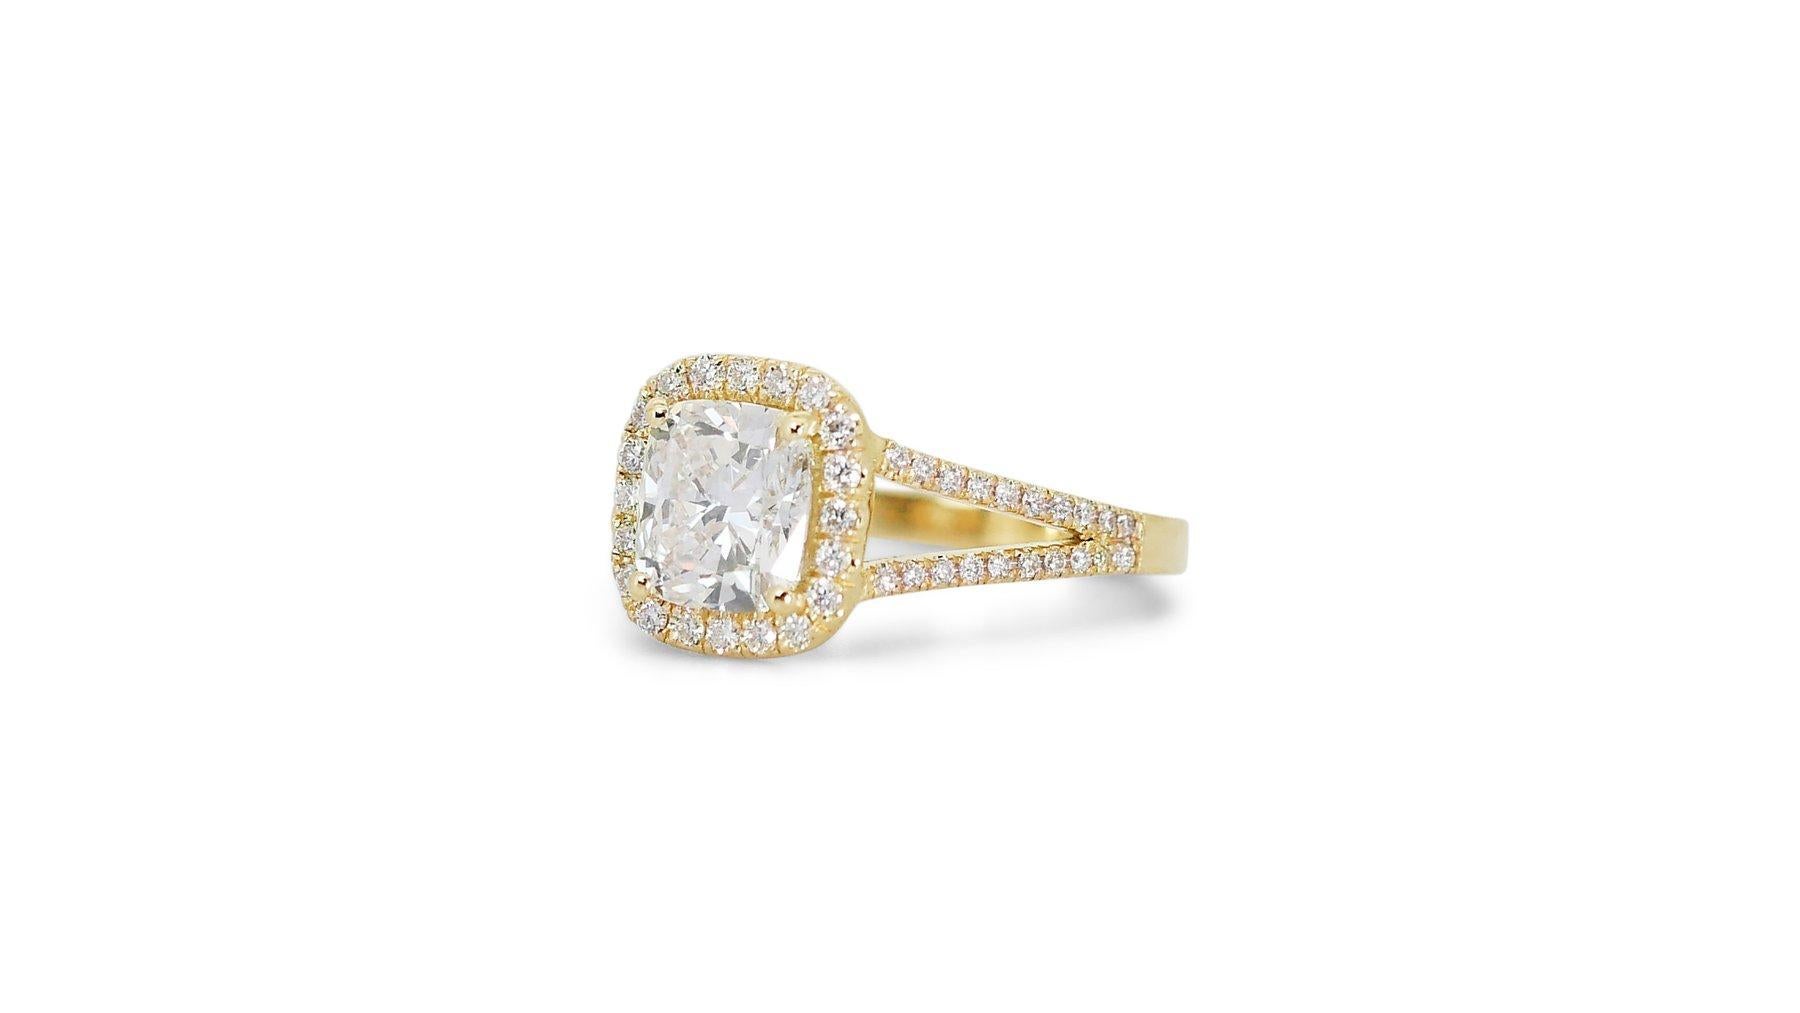 Luxuriöser 1,80ct Diamant Halo Ring in 18k Gelbgold- GIA zertifiziert

Genießen Sie die Raffinesse dieses luxuriösen Diamantrings aus 18 Karat Gelbgold, in dessen Mittelpunkt ein Diamant im Kissenschliff von 1,50 Karat steht. Dieses bezaubernde